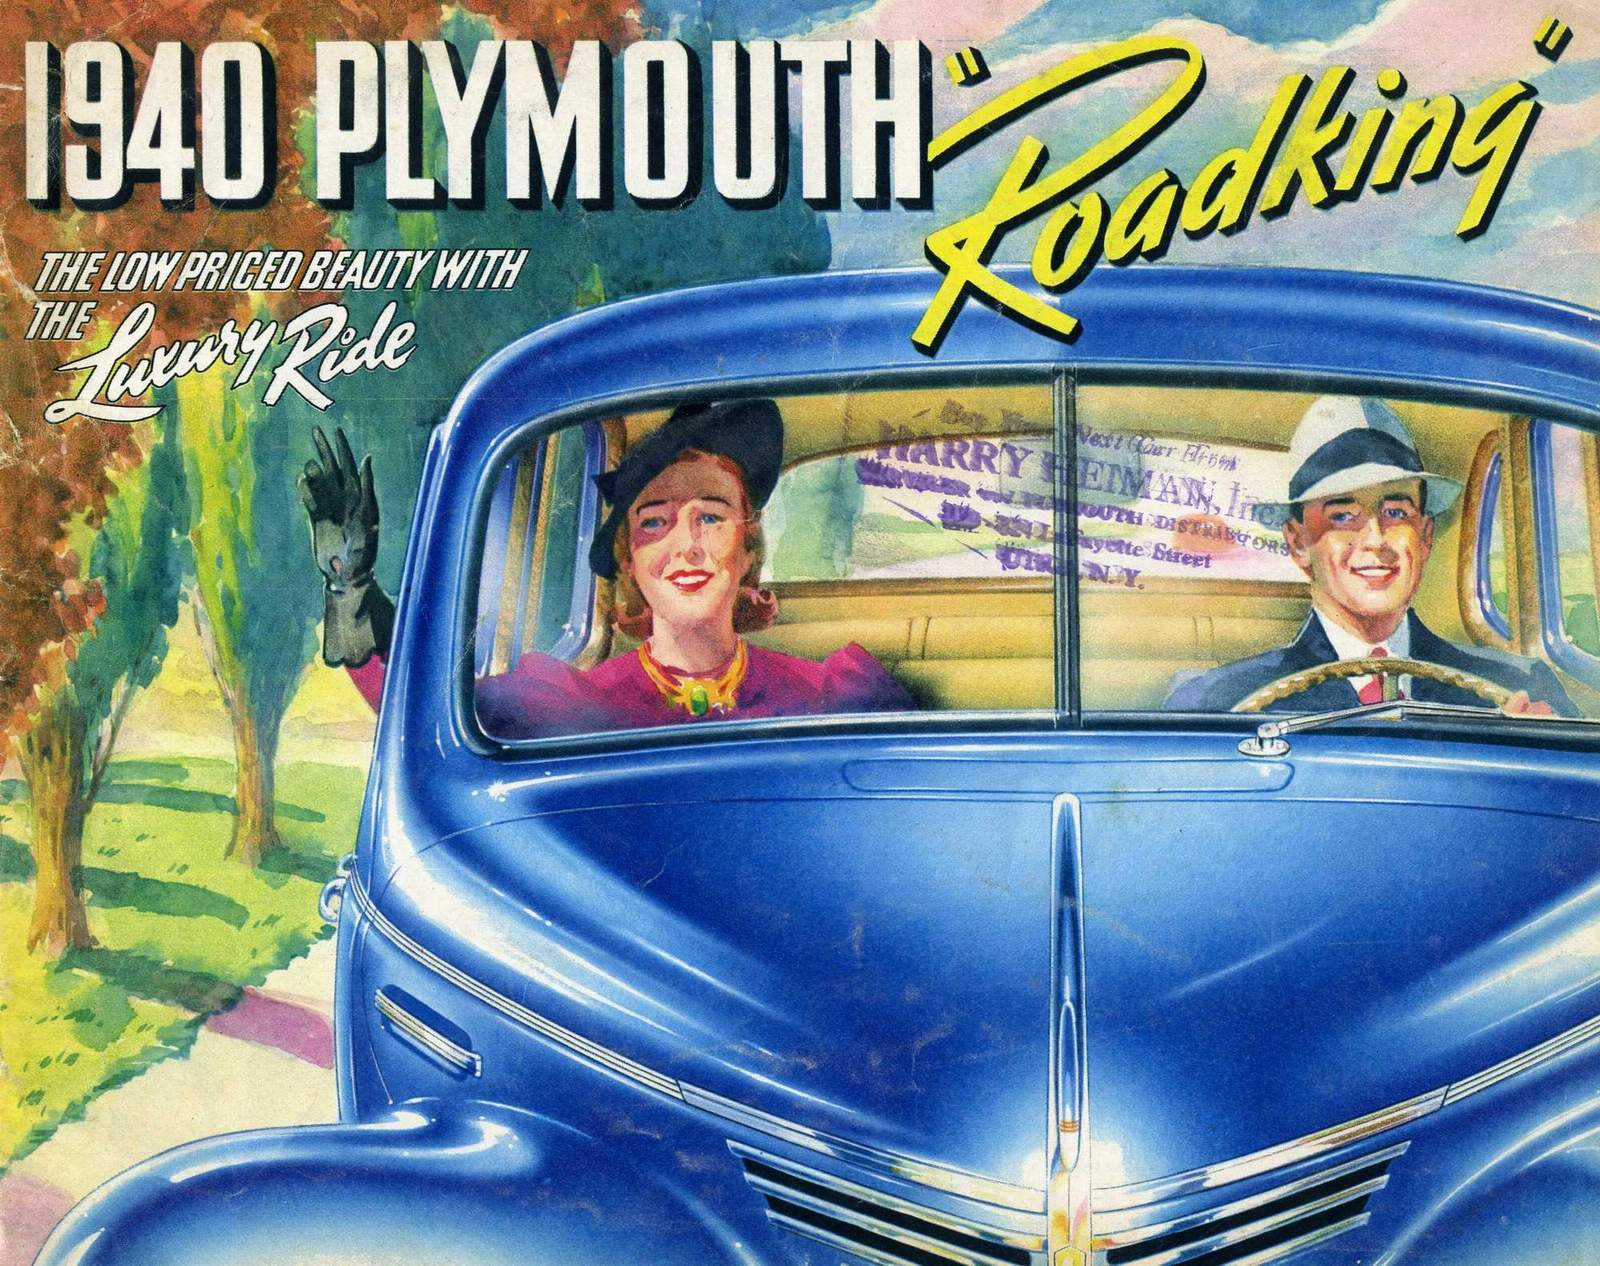 n_1940 Plymouth Road King-00.jpg